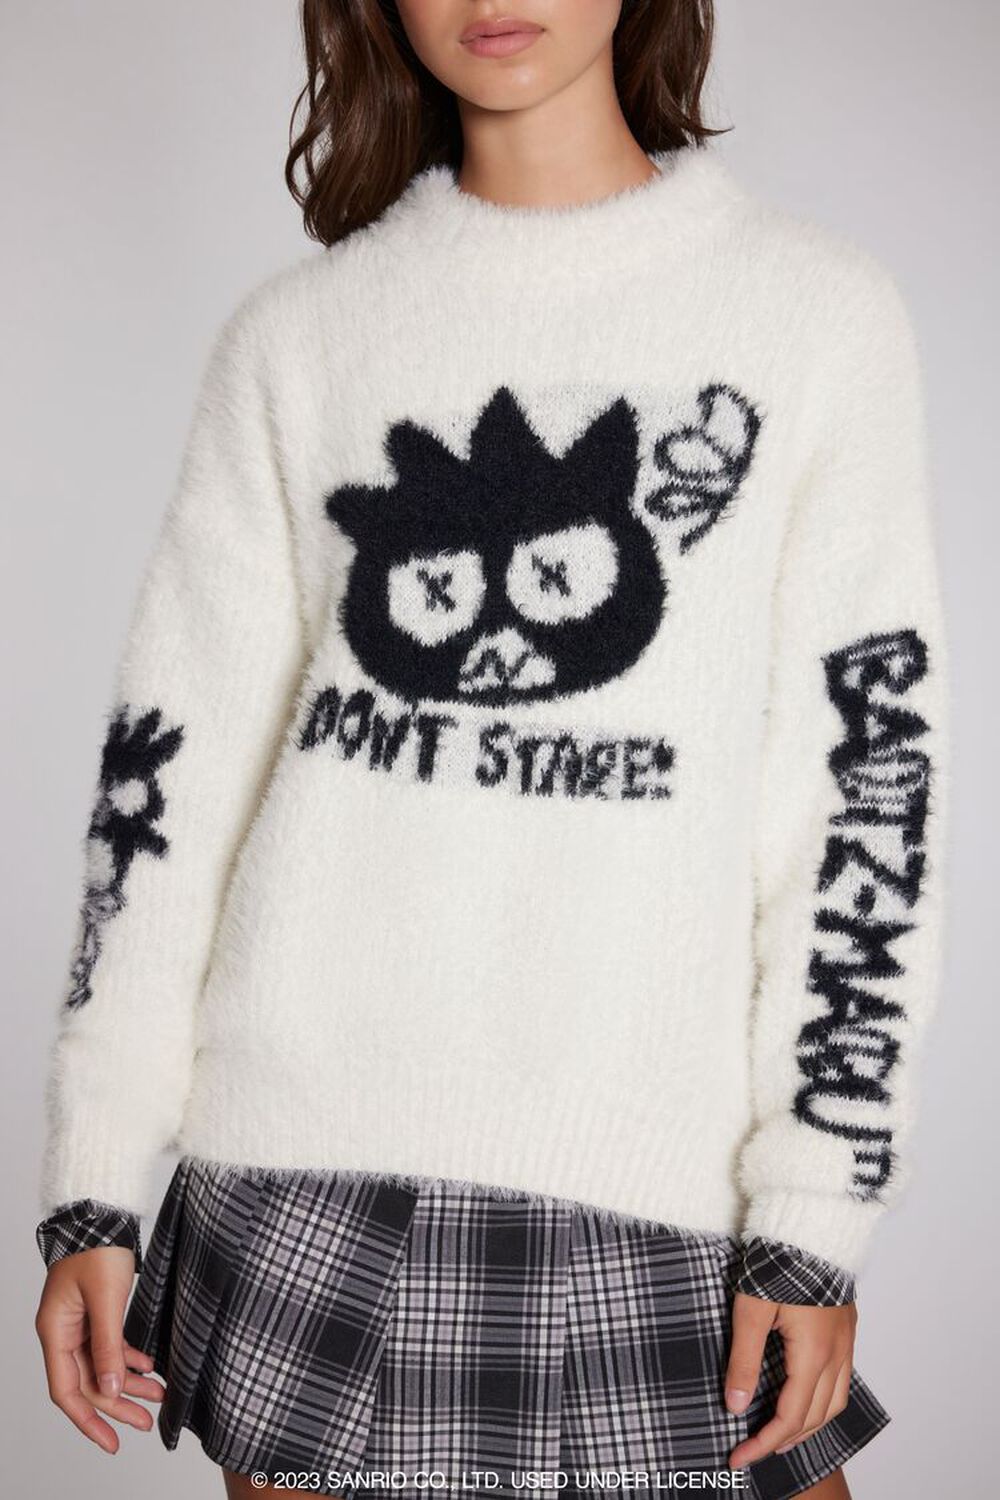 Badtz-Maru Fuzzy Knit Sweater